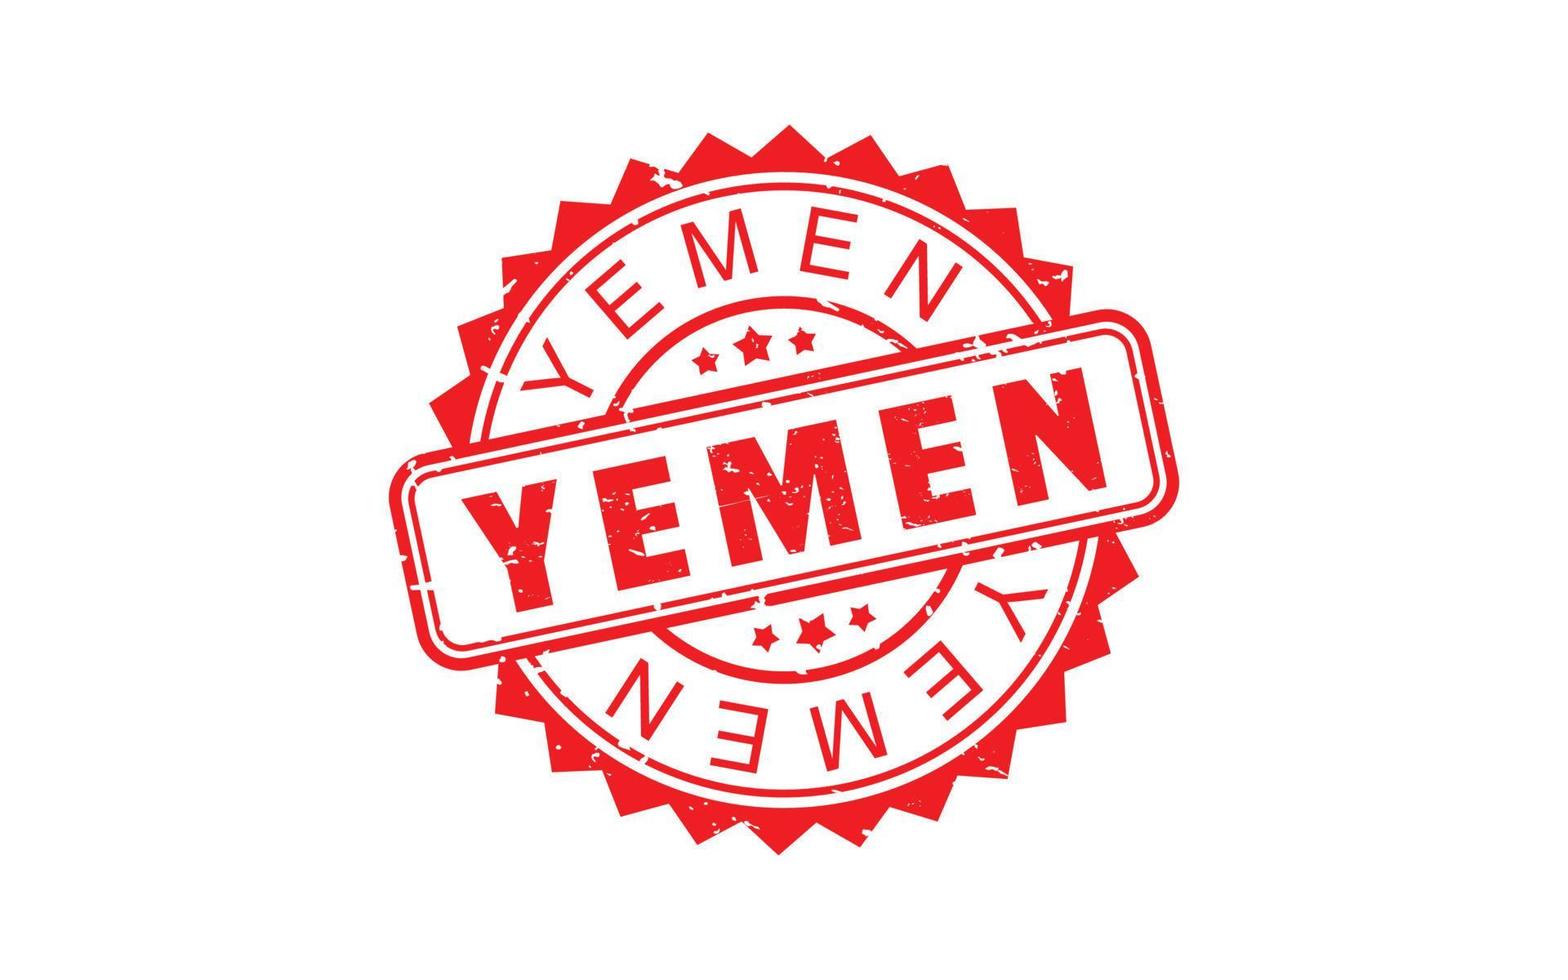 Jemen Briefmarke Gummi mit Grunge Stil auf Weiß Hintergrund vektor